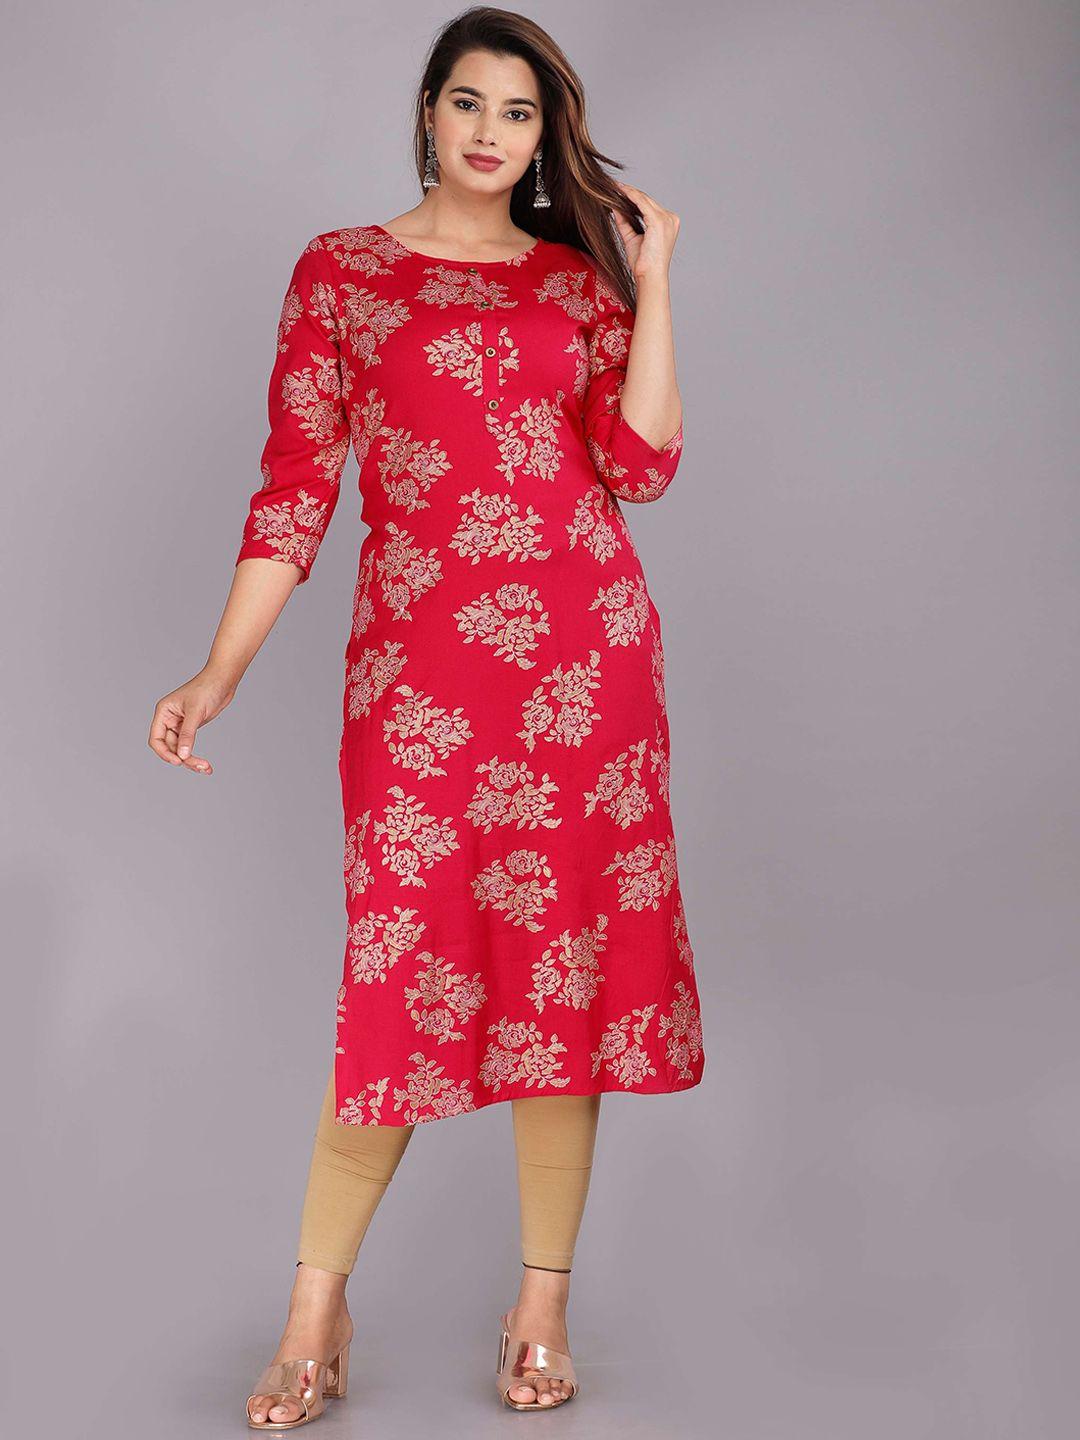 roopwati-fashion-women-pink-floral-printed-floral-kurta